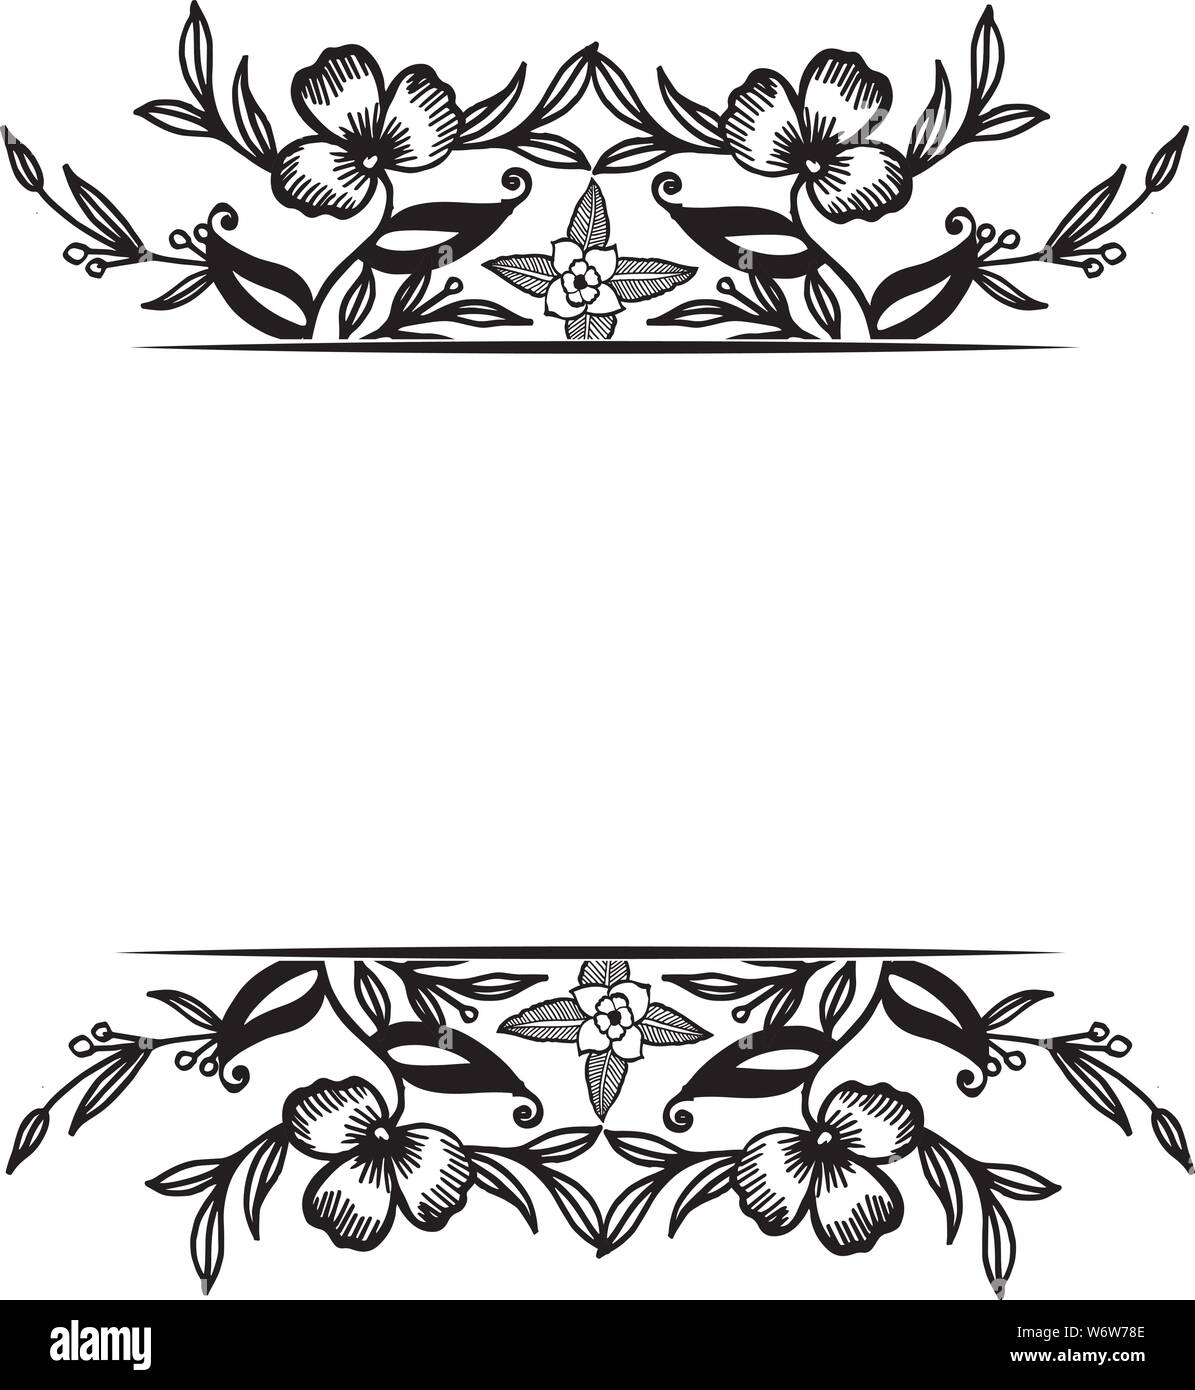 Ornate Frame Elegant Black White Flower Design Of Various Cards Vector Illustration Stock Vector Image Art Alamy